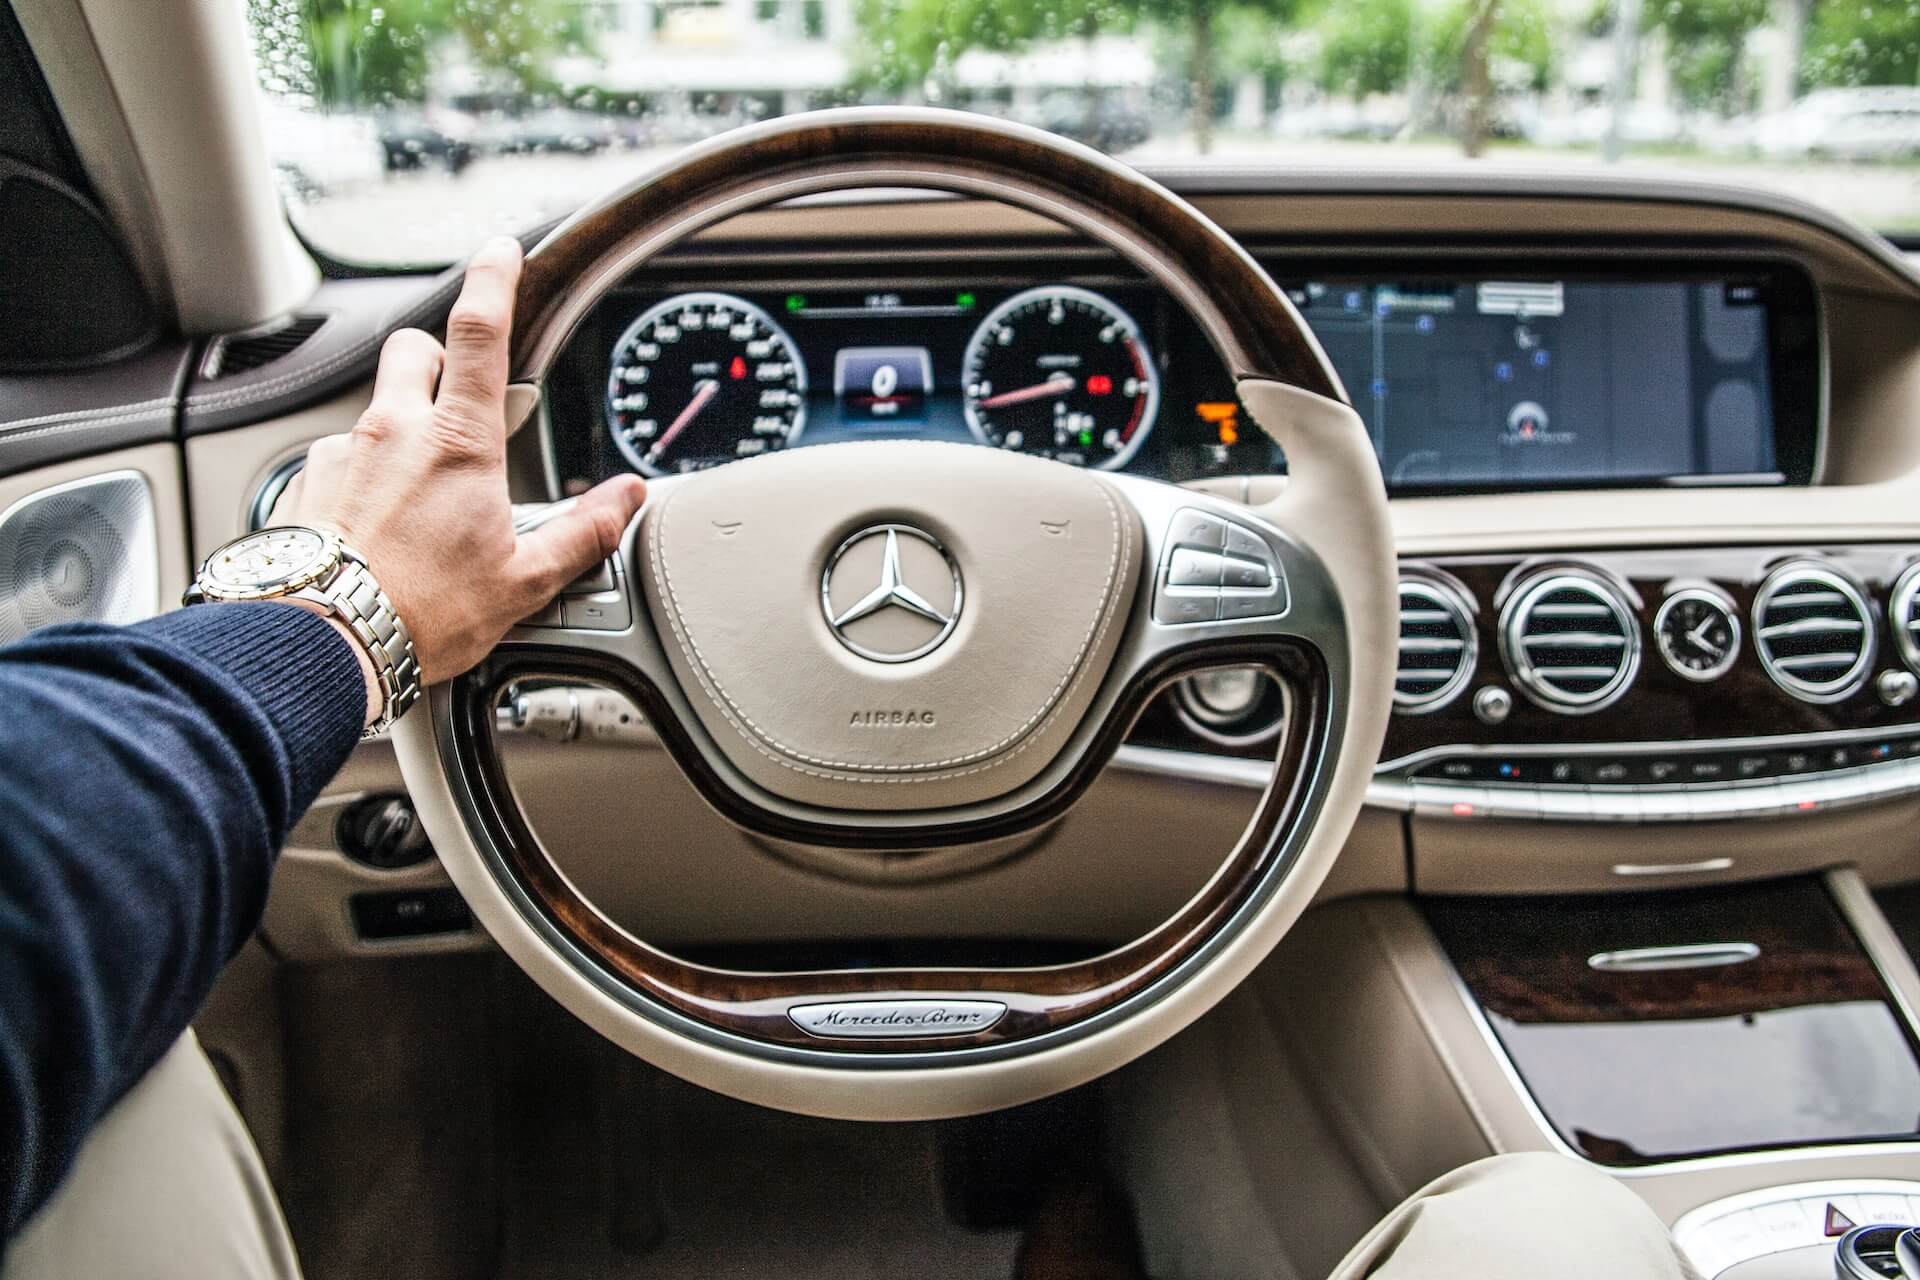 Driving a Mercedes